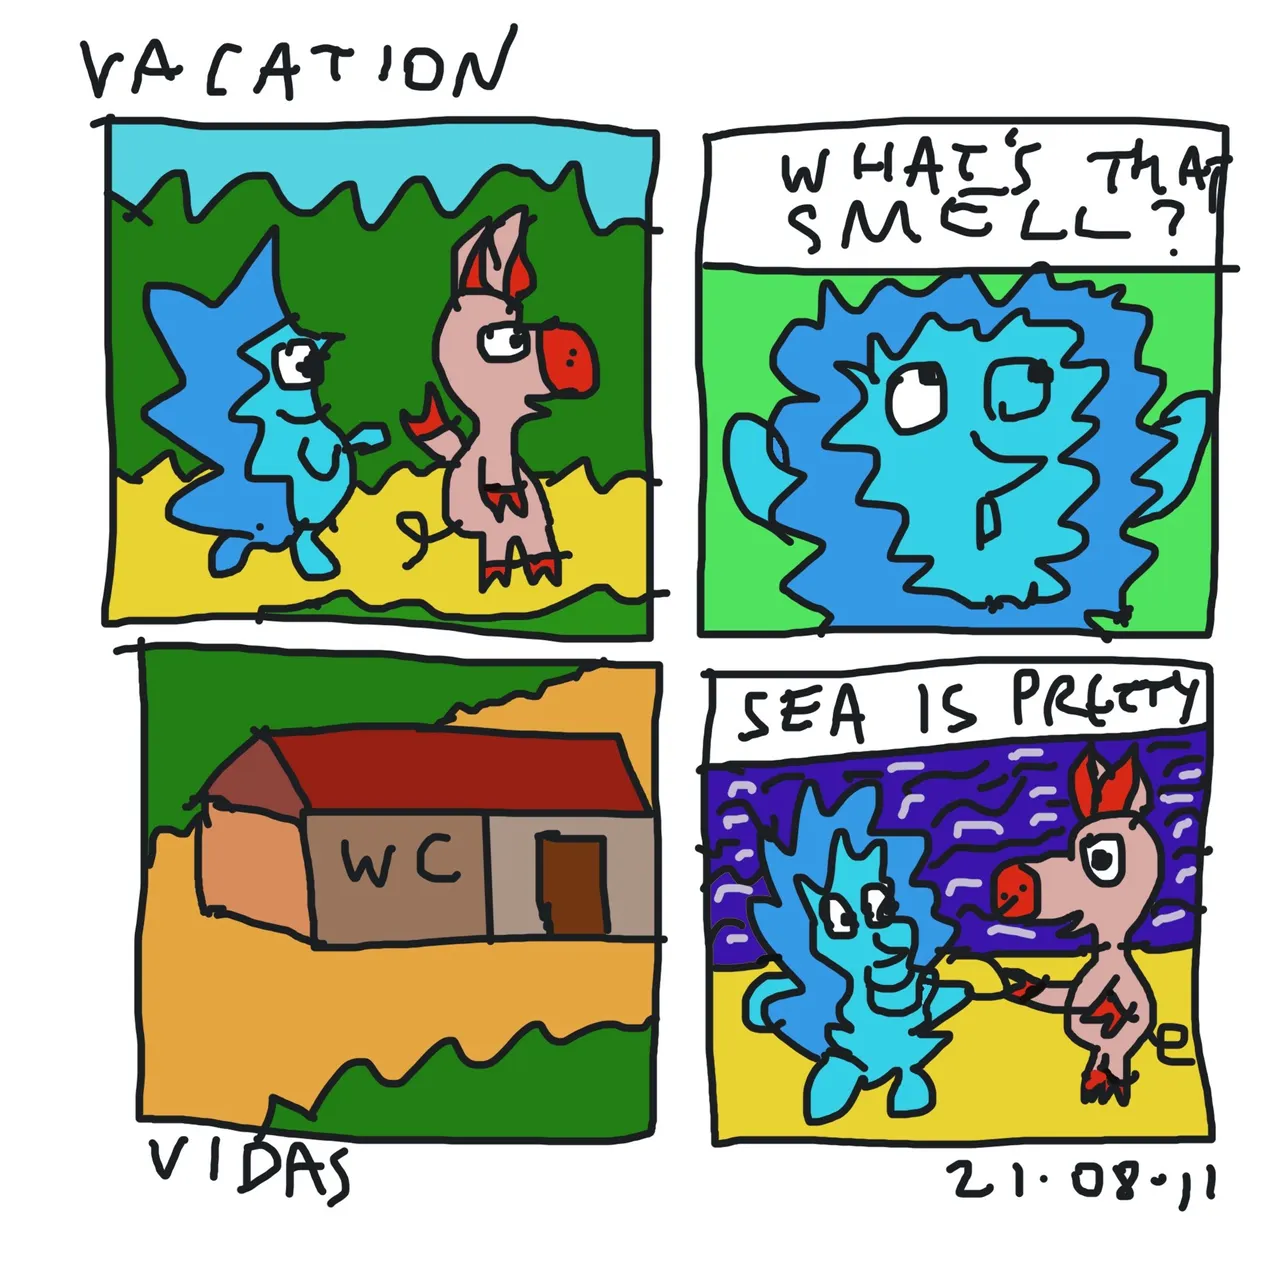 Vacation.jpg